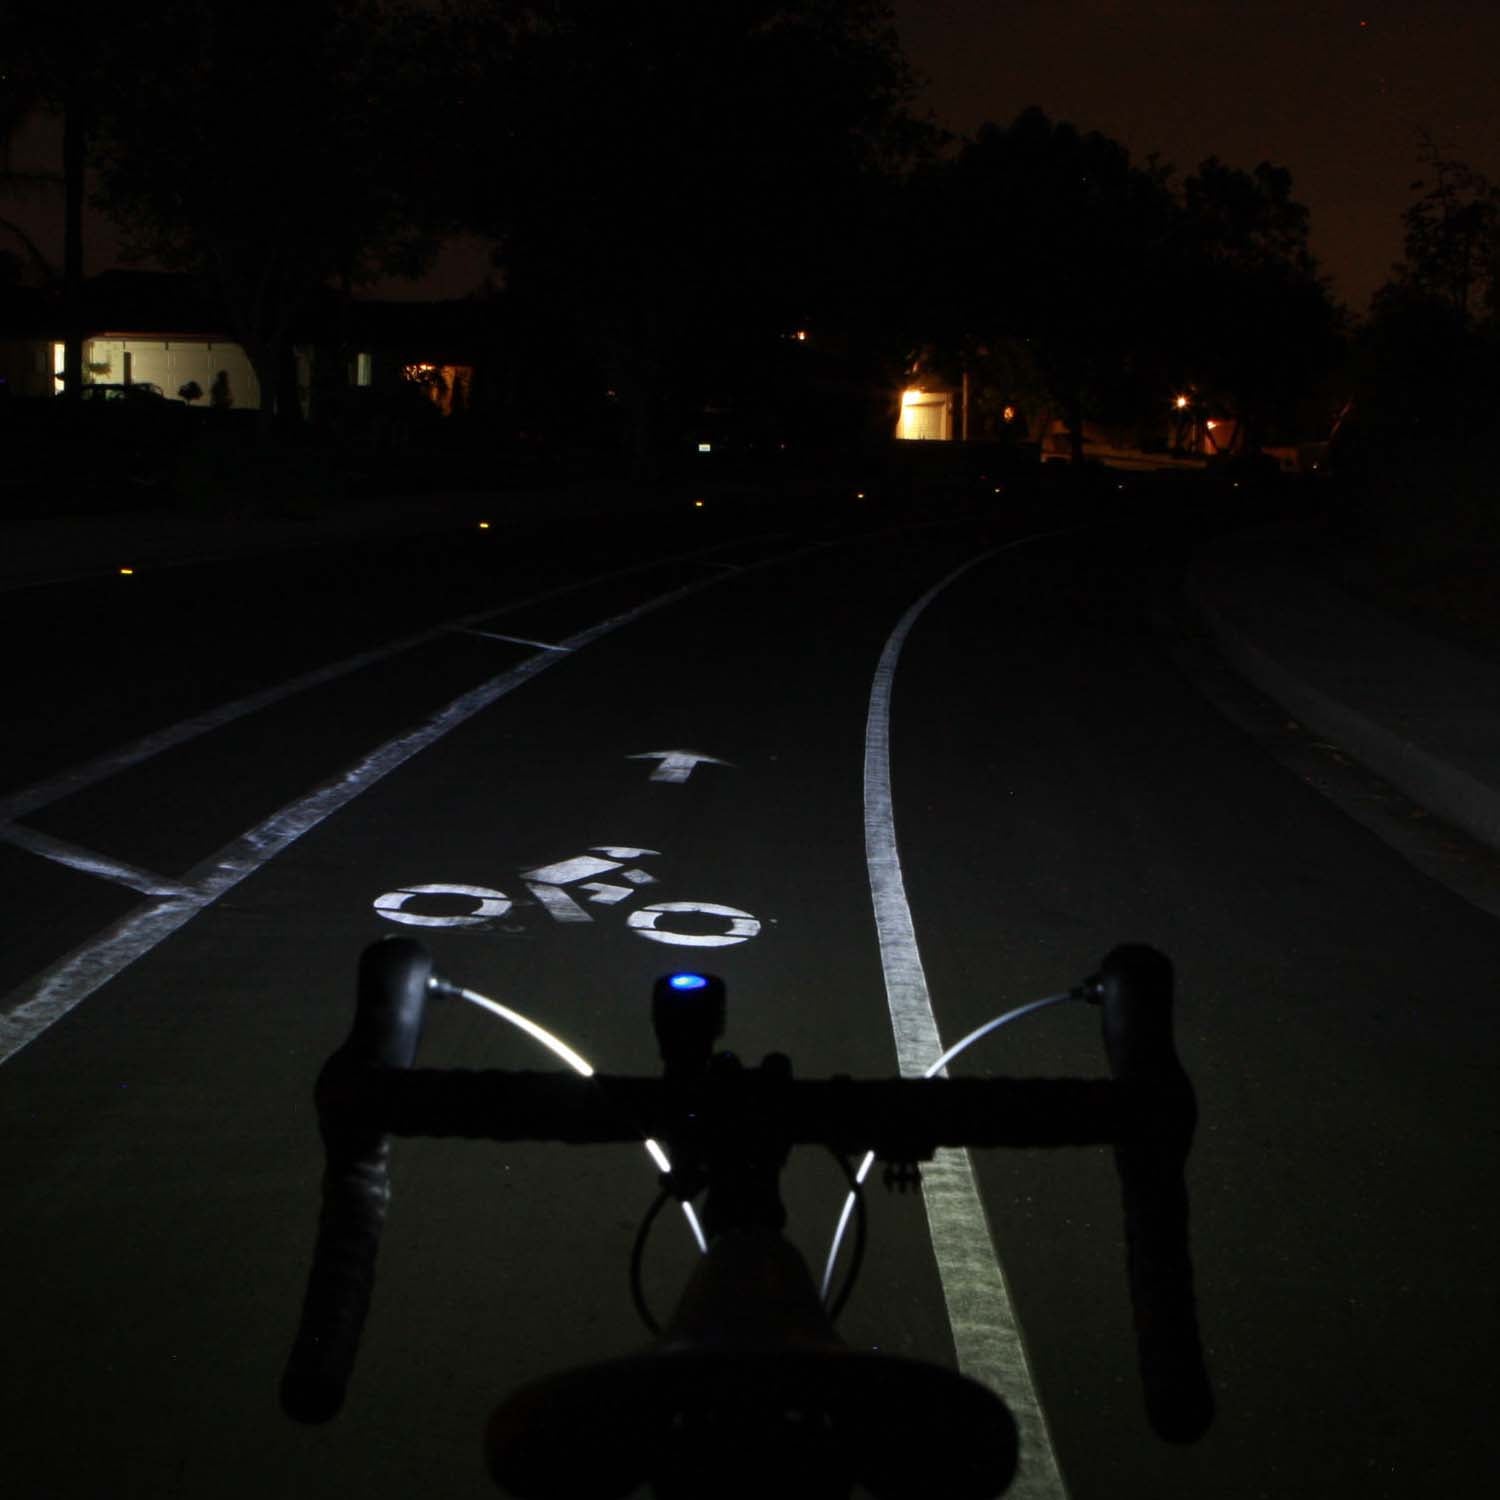 lumina 650 bike light